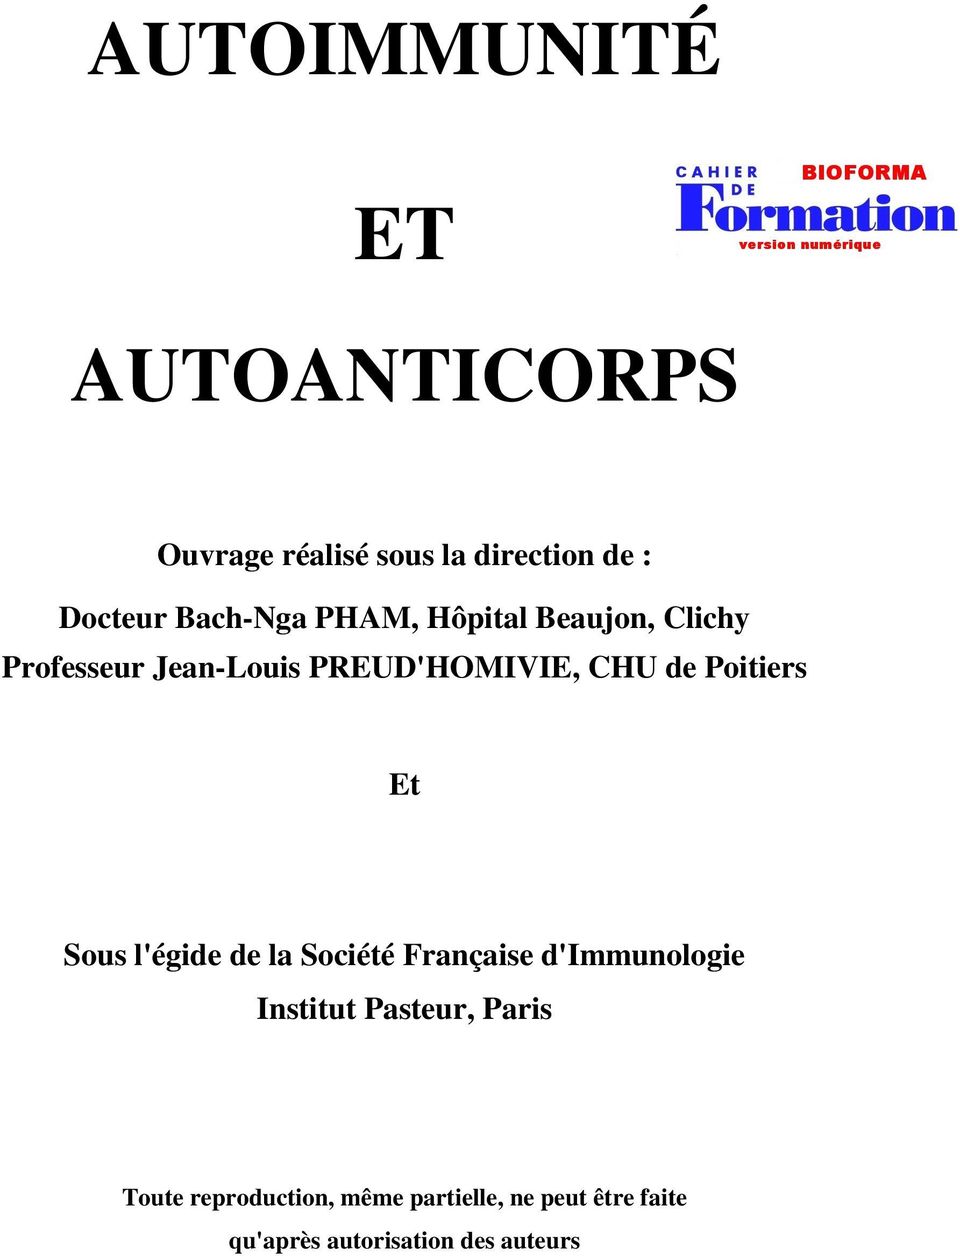 Poitiers Et Sous l'égide de la Société Française d'immunologie Institut Pasteur,